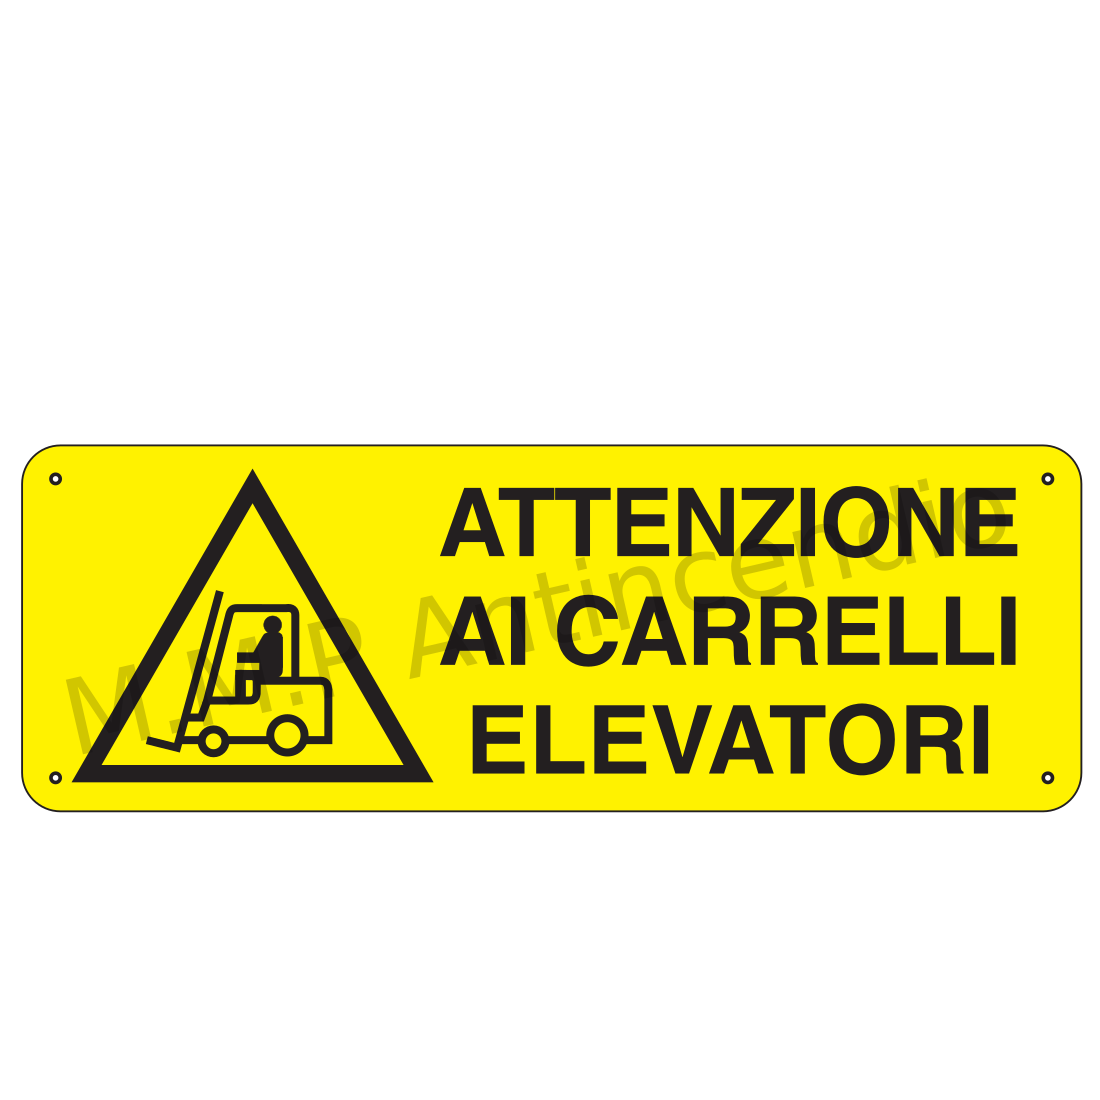 Attenzione ai carrelli elevatori